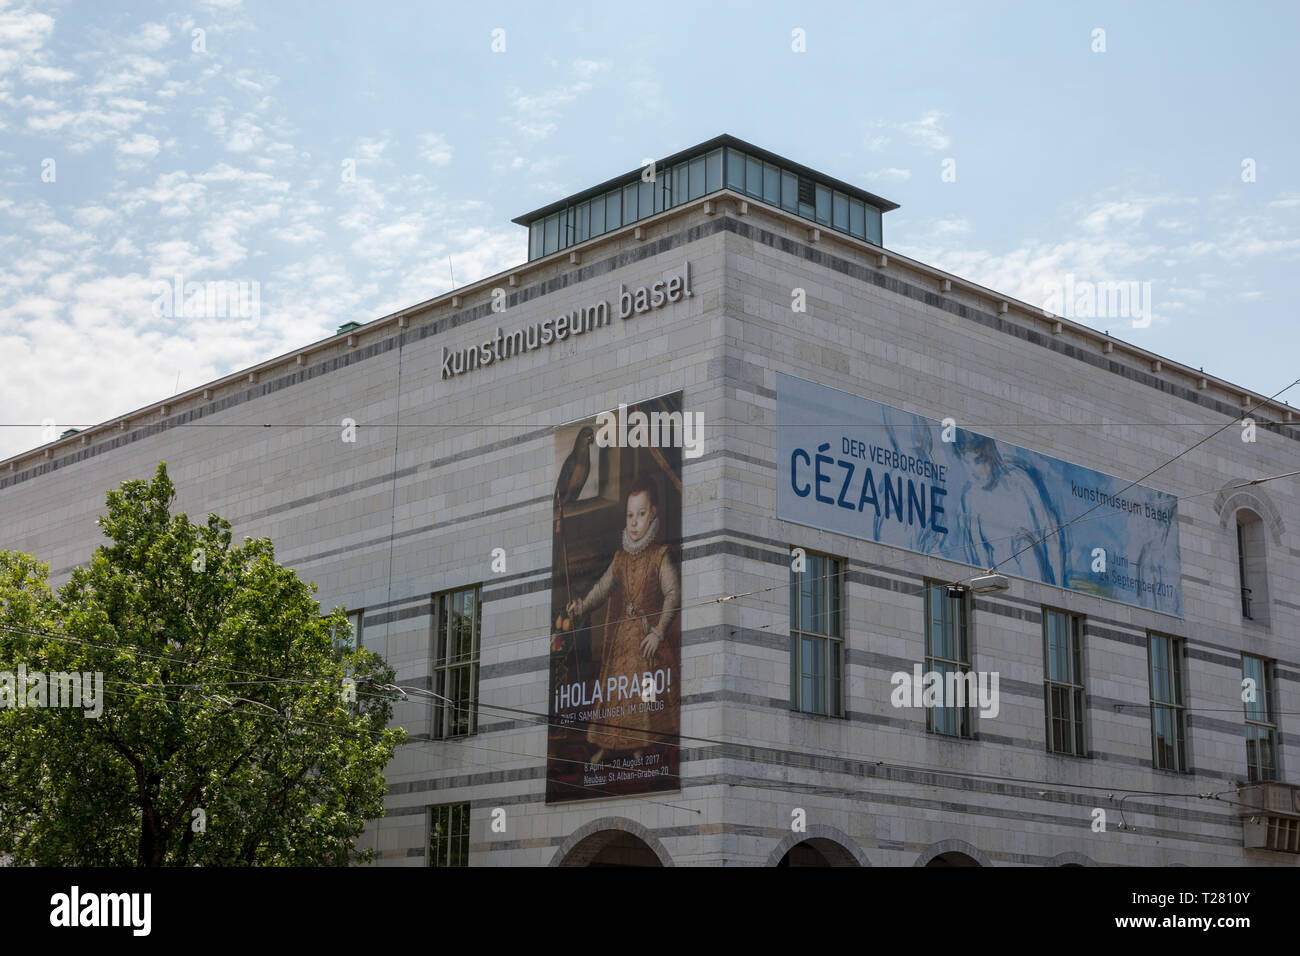 Basel, Schweiz, 21. Juni 2017: Kunstmuseum Basel Häuser, ist die grösste und wichtigste öffentliche Kunstsammlung in die Schweiz und wird aufgelistet Stockfoto